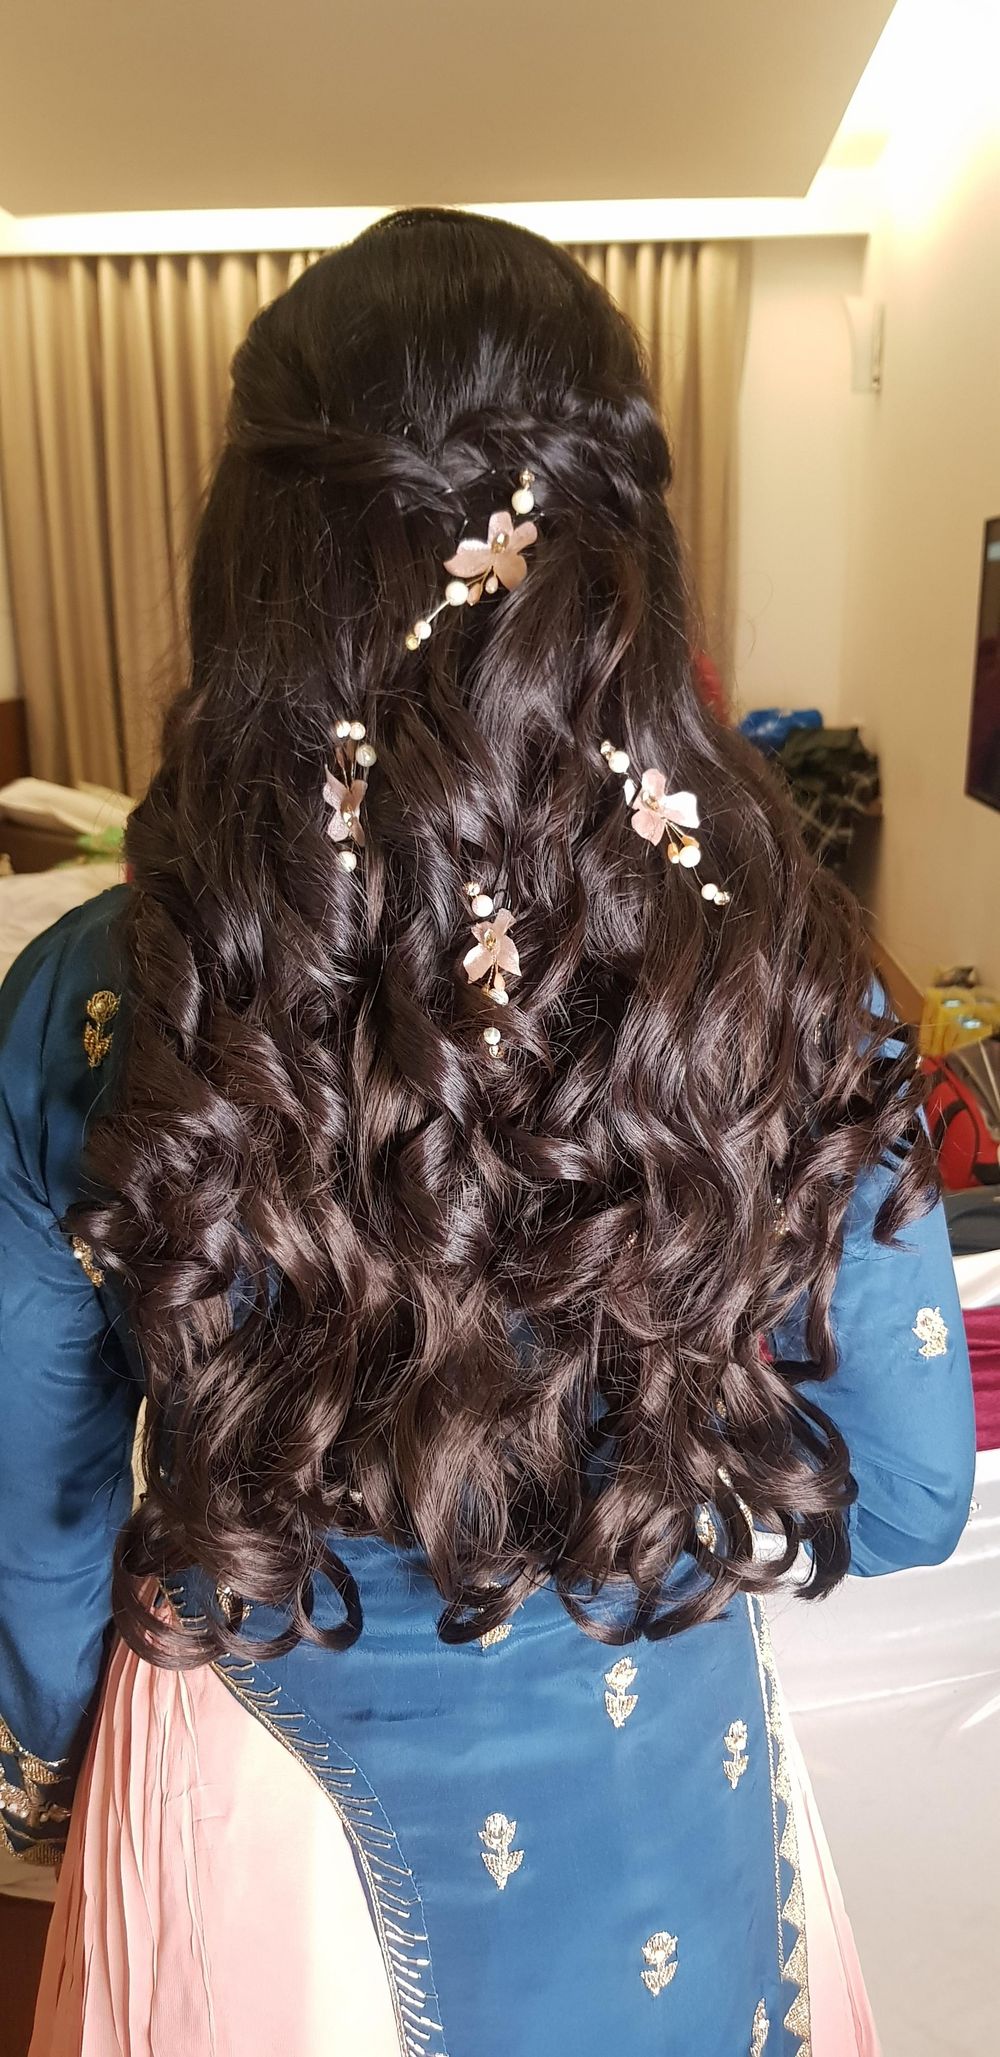 Photo From Bridal Hair - By Foram Atara